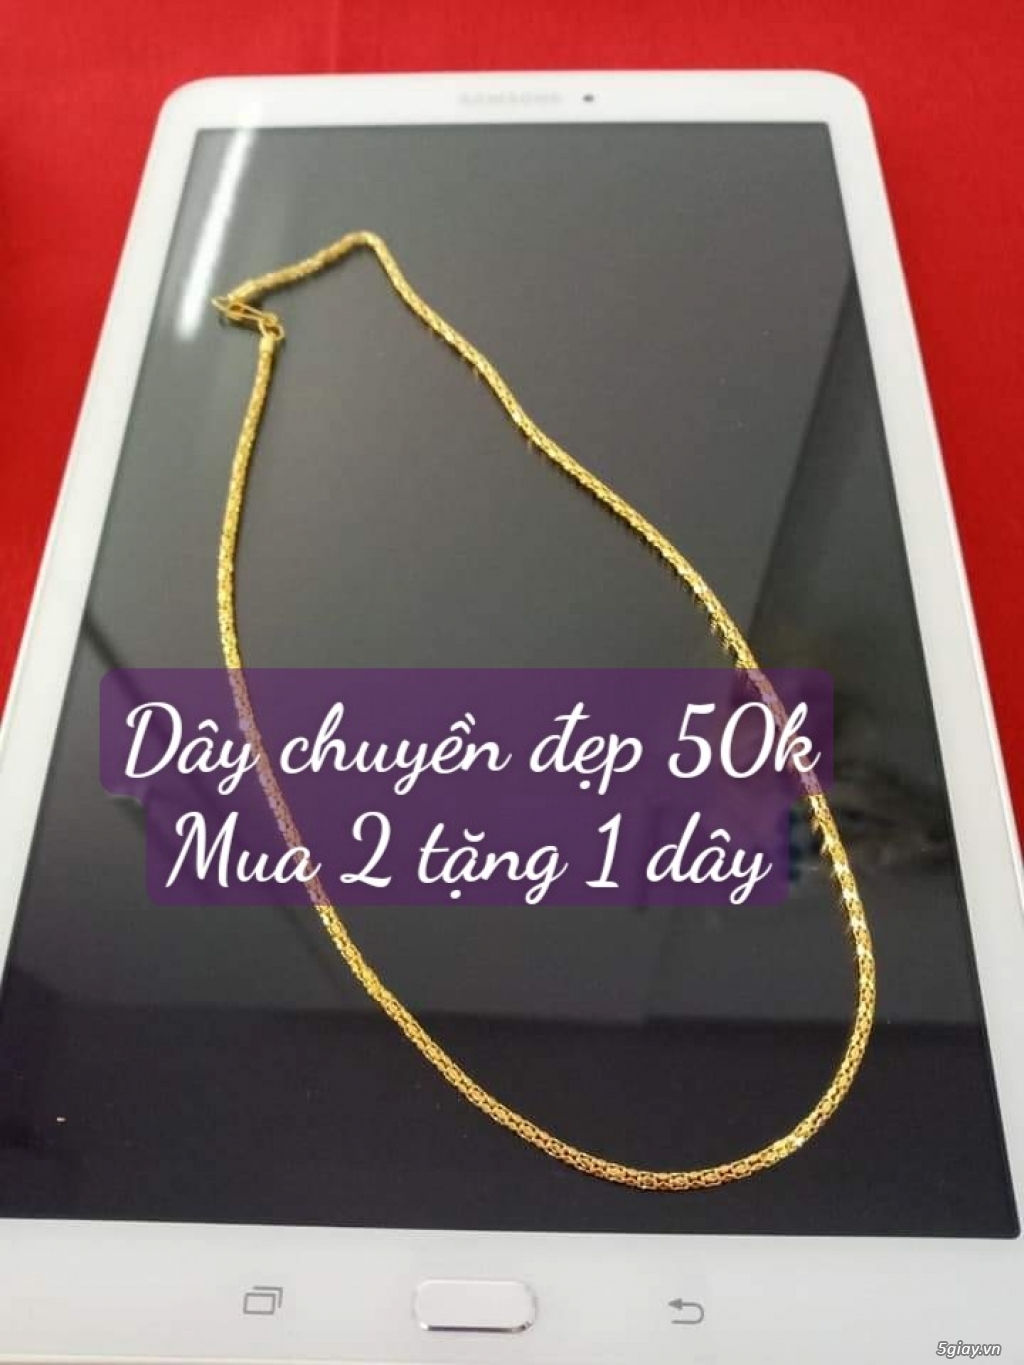 Bán dây chuyền mạ vàng dùng đeo hàng ngày giá 50k/ 1 dây ( có shopee)